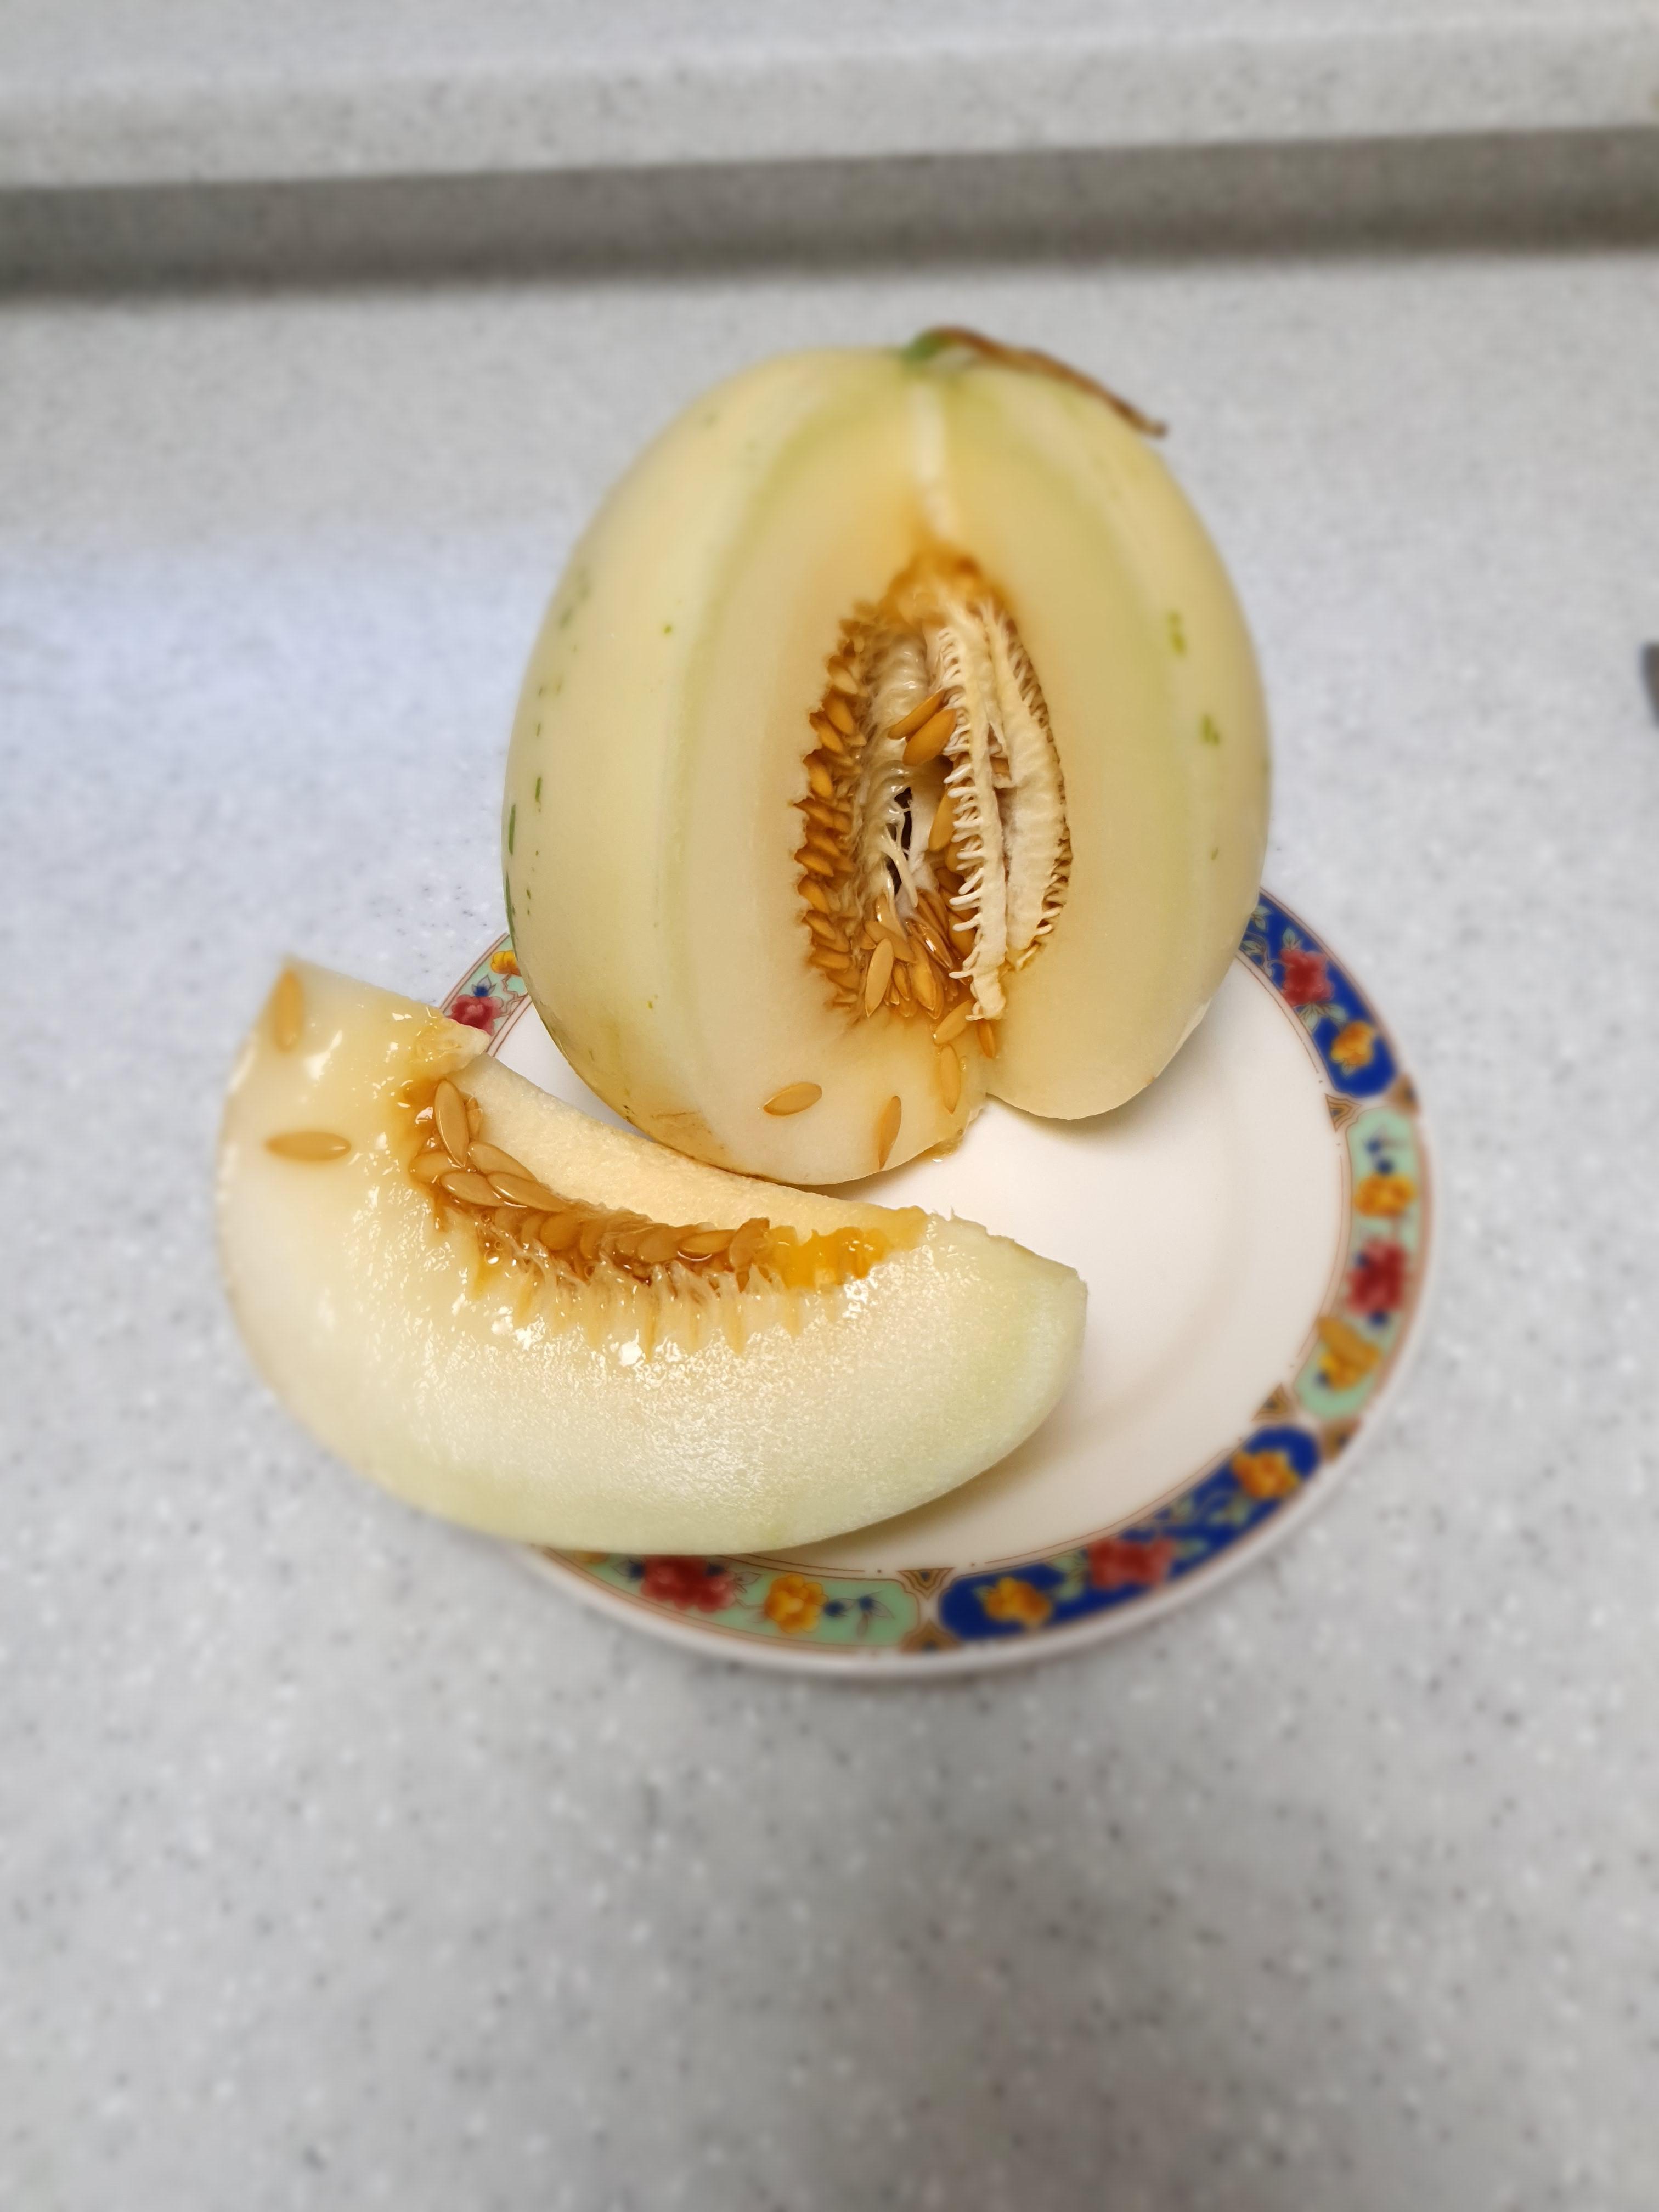 백자멜론 껍질을 깎은후 한개만 자른 사진